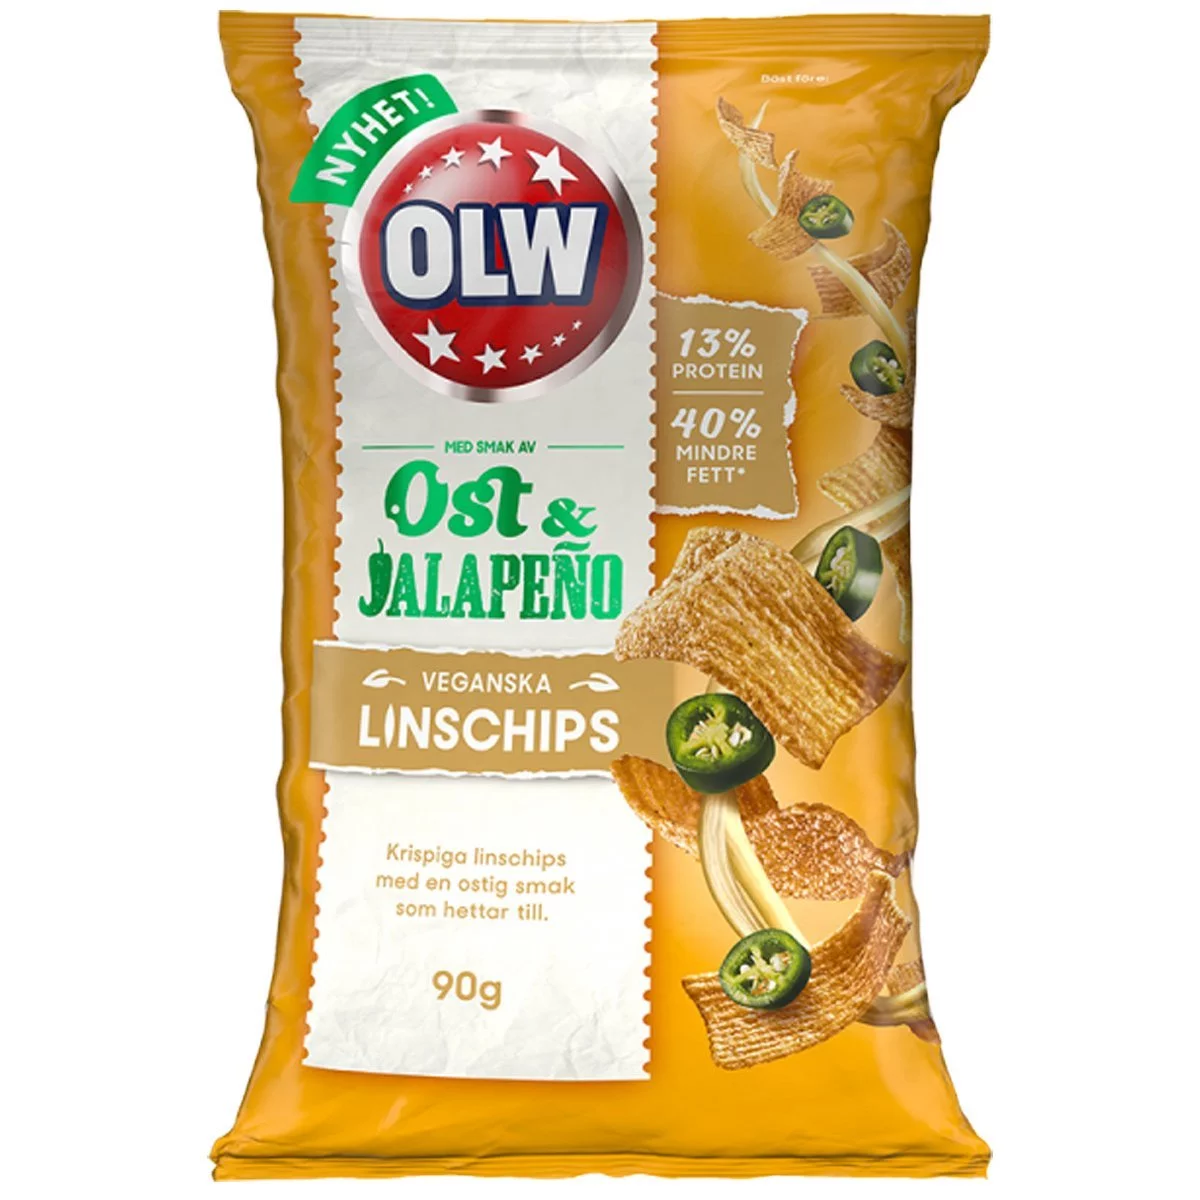 OLW Linschips Ost & Jalapeño (90g) 1